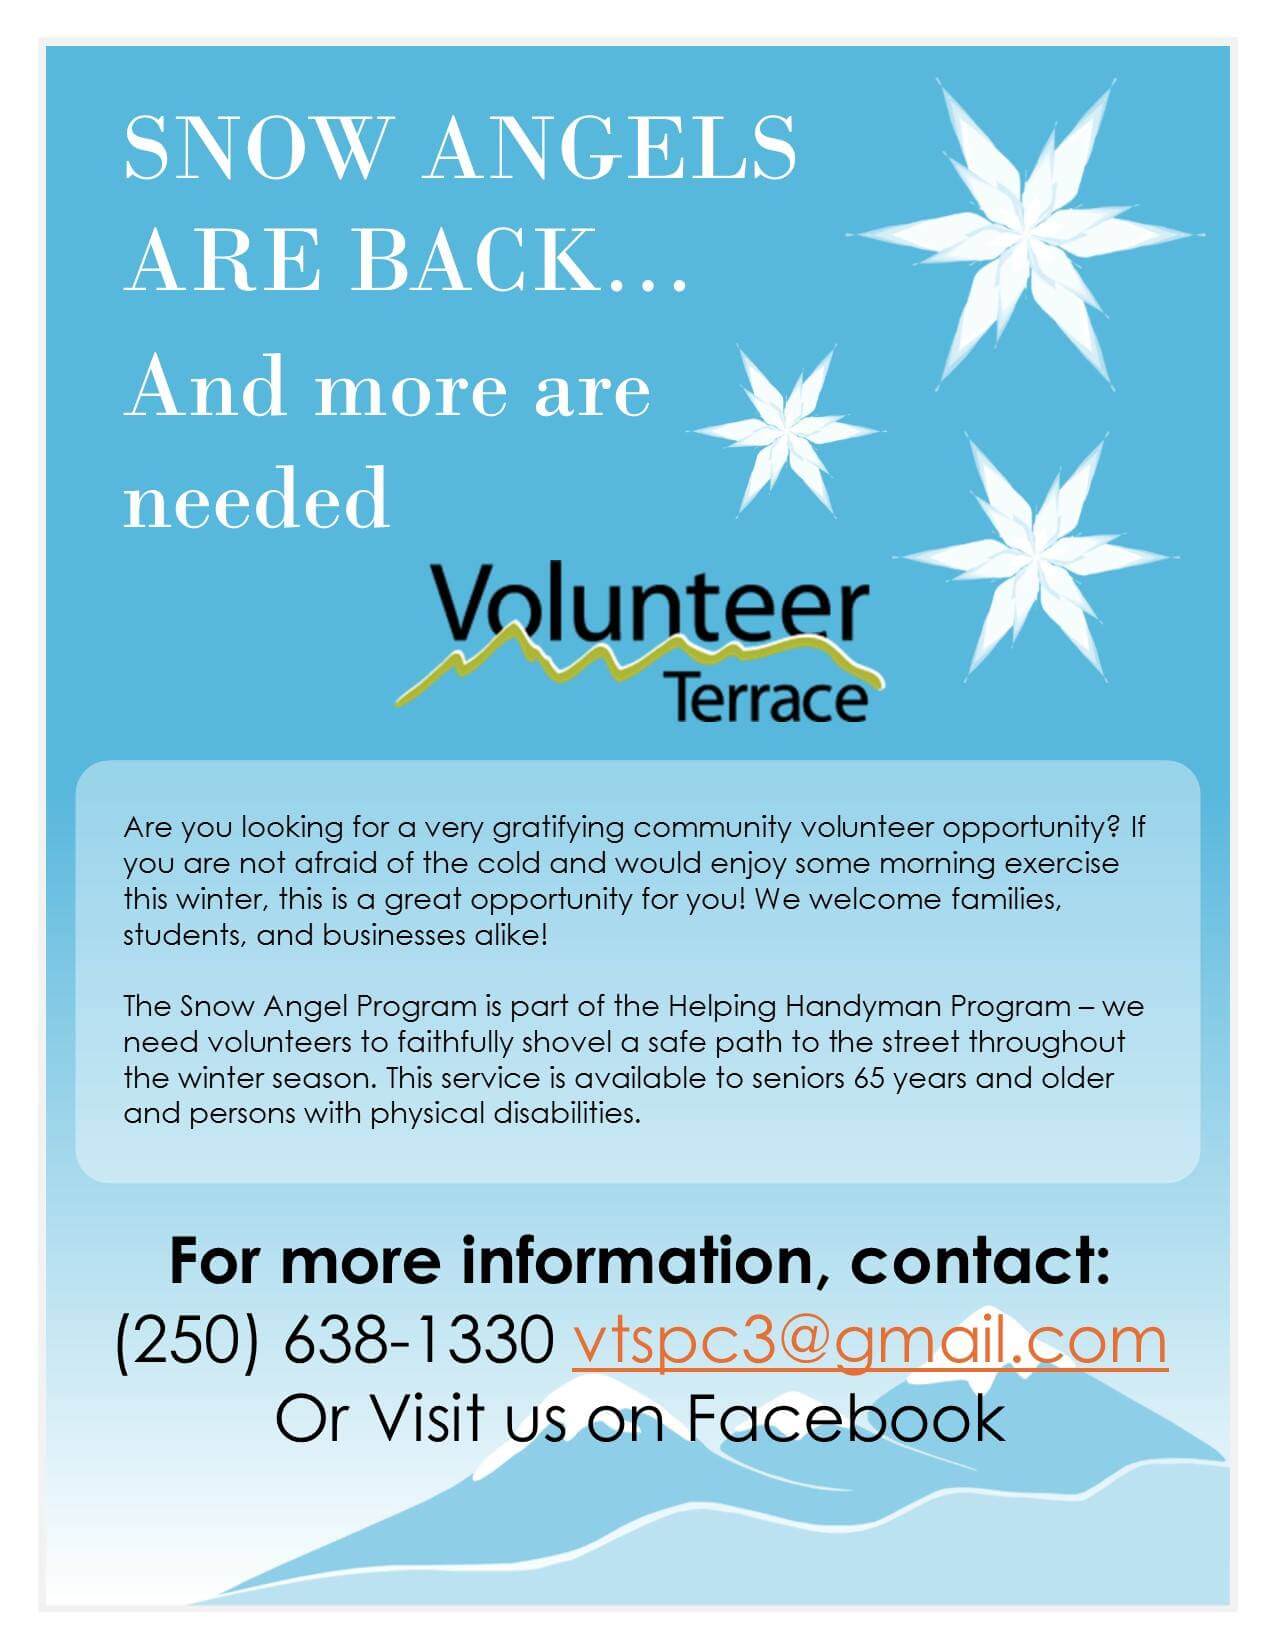 Looking to Volunteer?